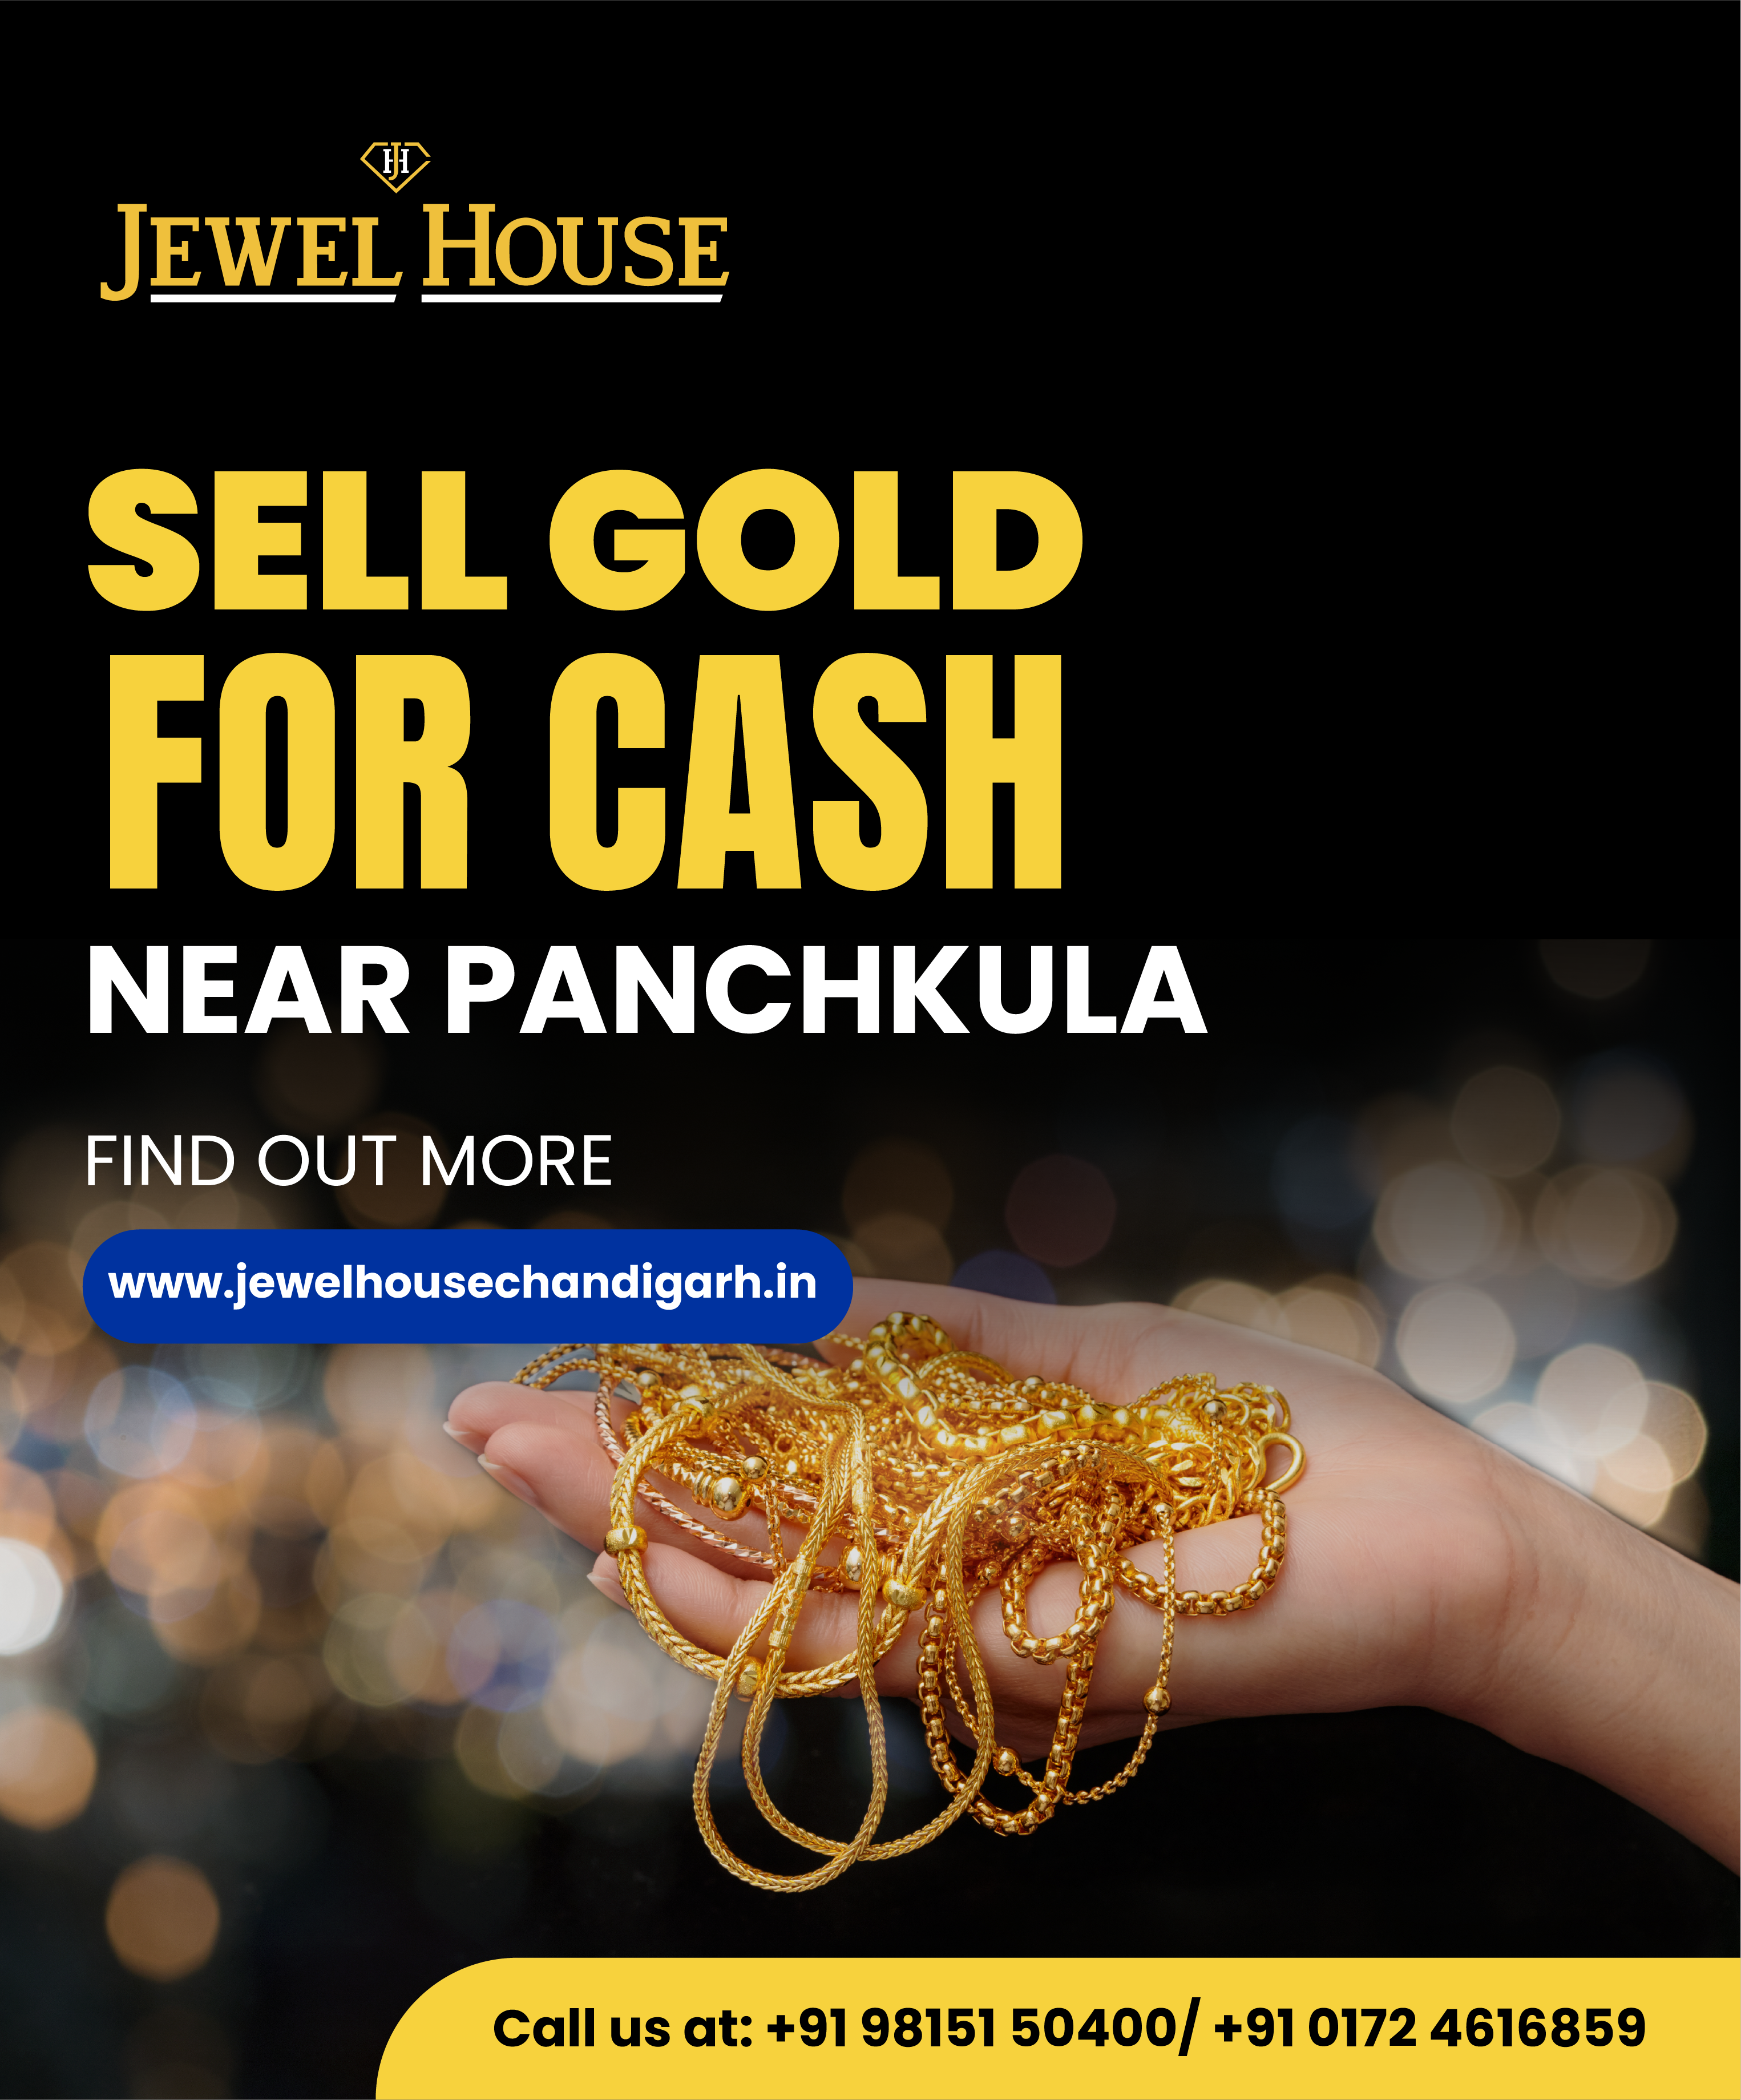 Jewel house in Panchkula